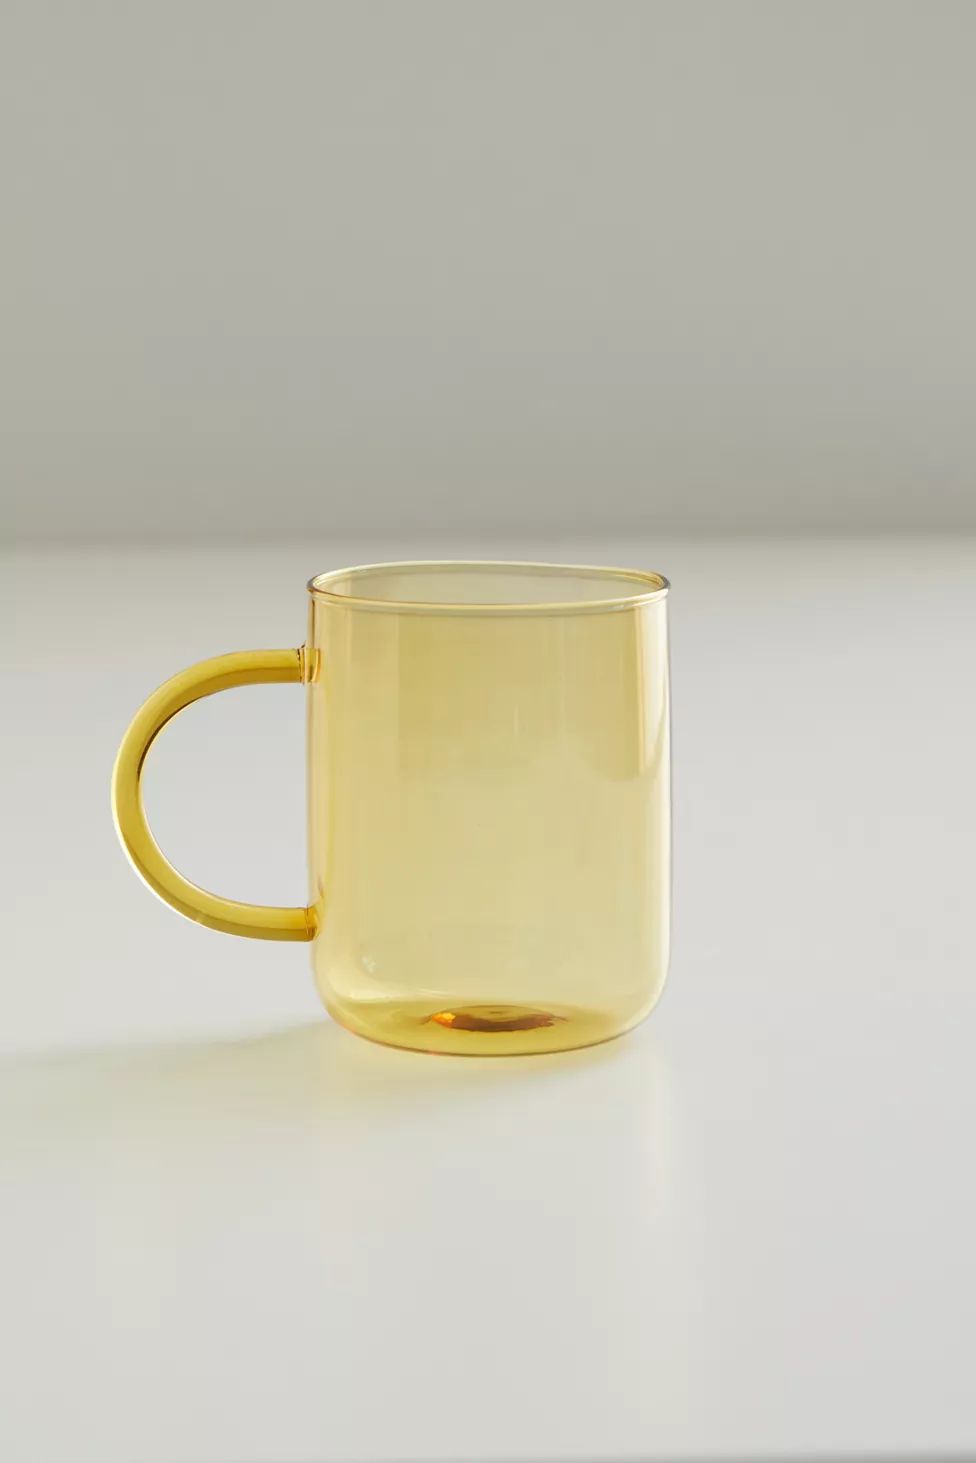 Sabine Tinted Hue Glass Mug | Urban Outfitters (US and RoW)